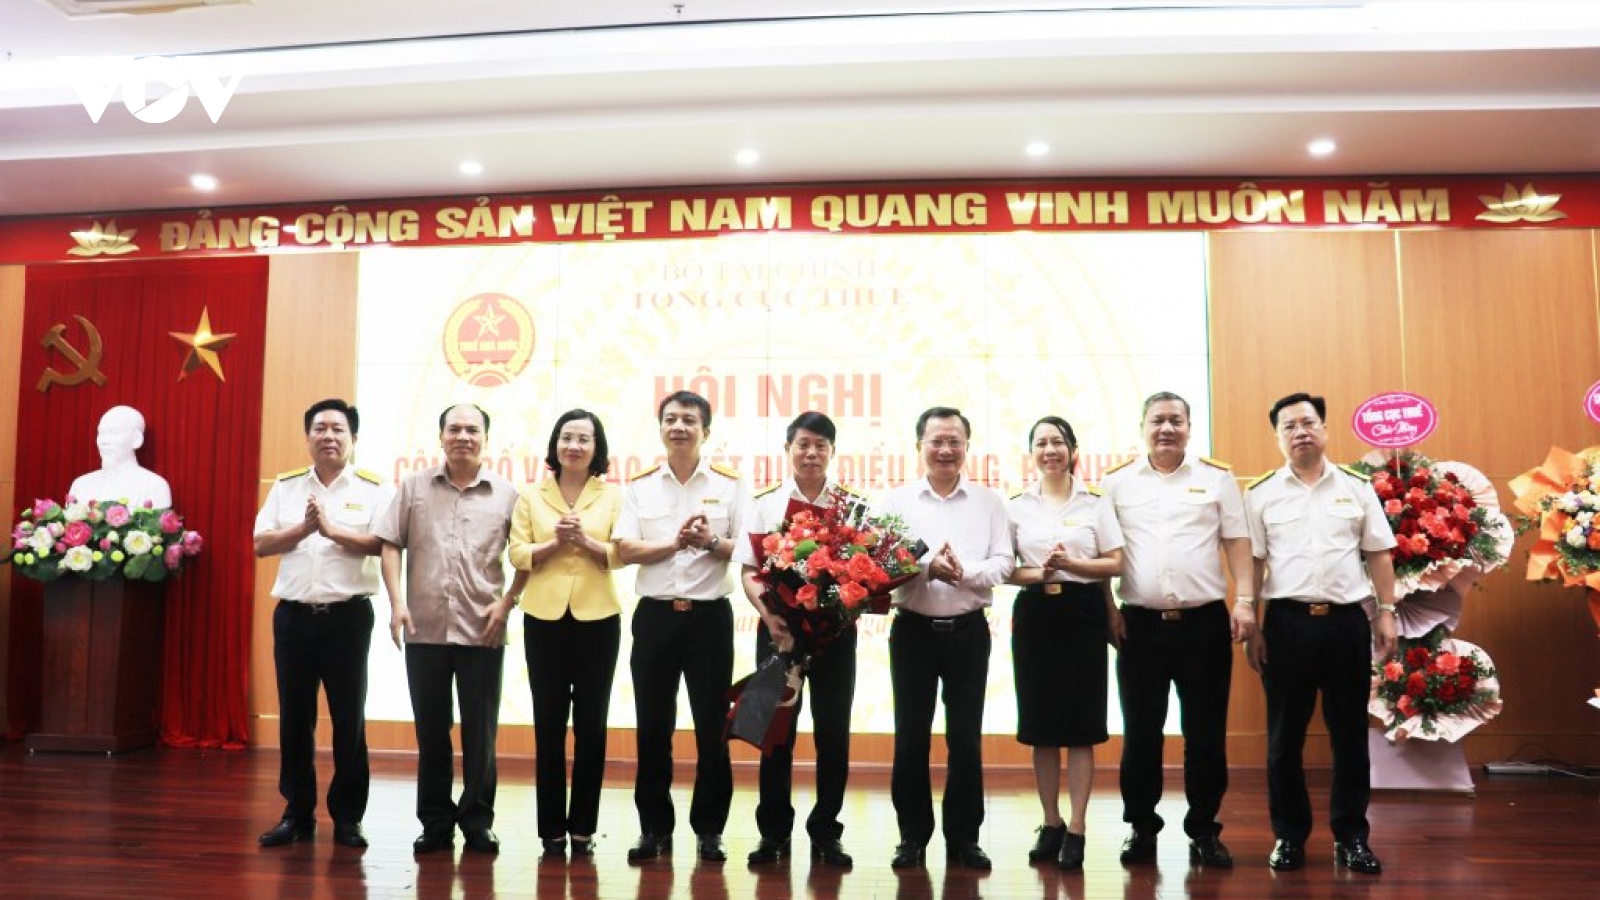 Hải Phòng, Quảng Ninh có tân Cục trưởng Cục Thuế